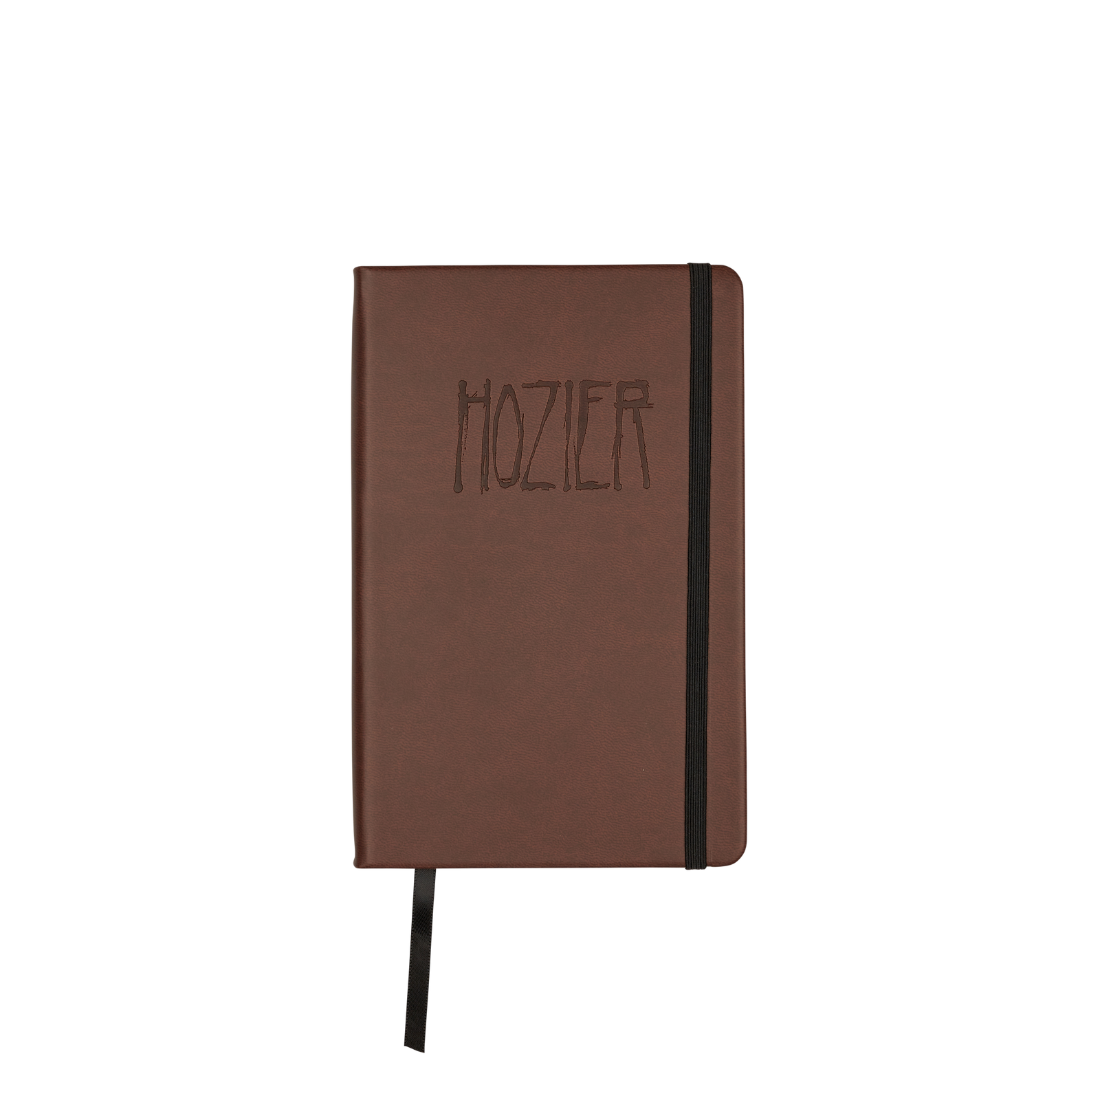 Hozier - Hozier Vegan Leather Journal